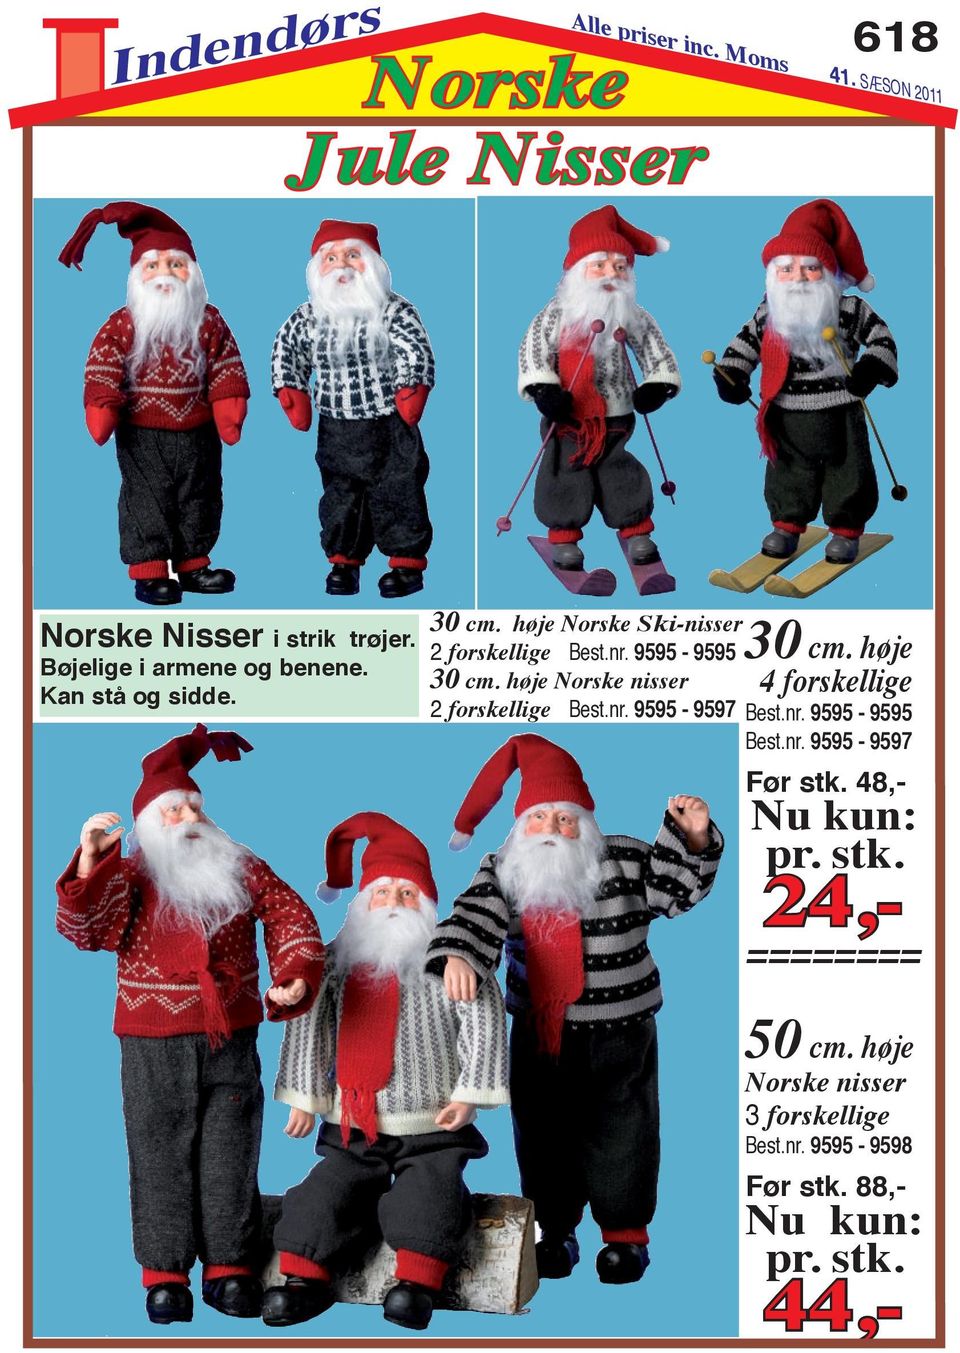 høje Norske nisser 4 forskellige 2 forskellige Best.nr. 9595-9597 Best.nr. 9595-9595 Best.nr. 9595-9597 Før stk.